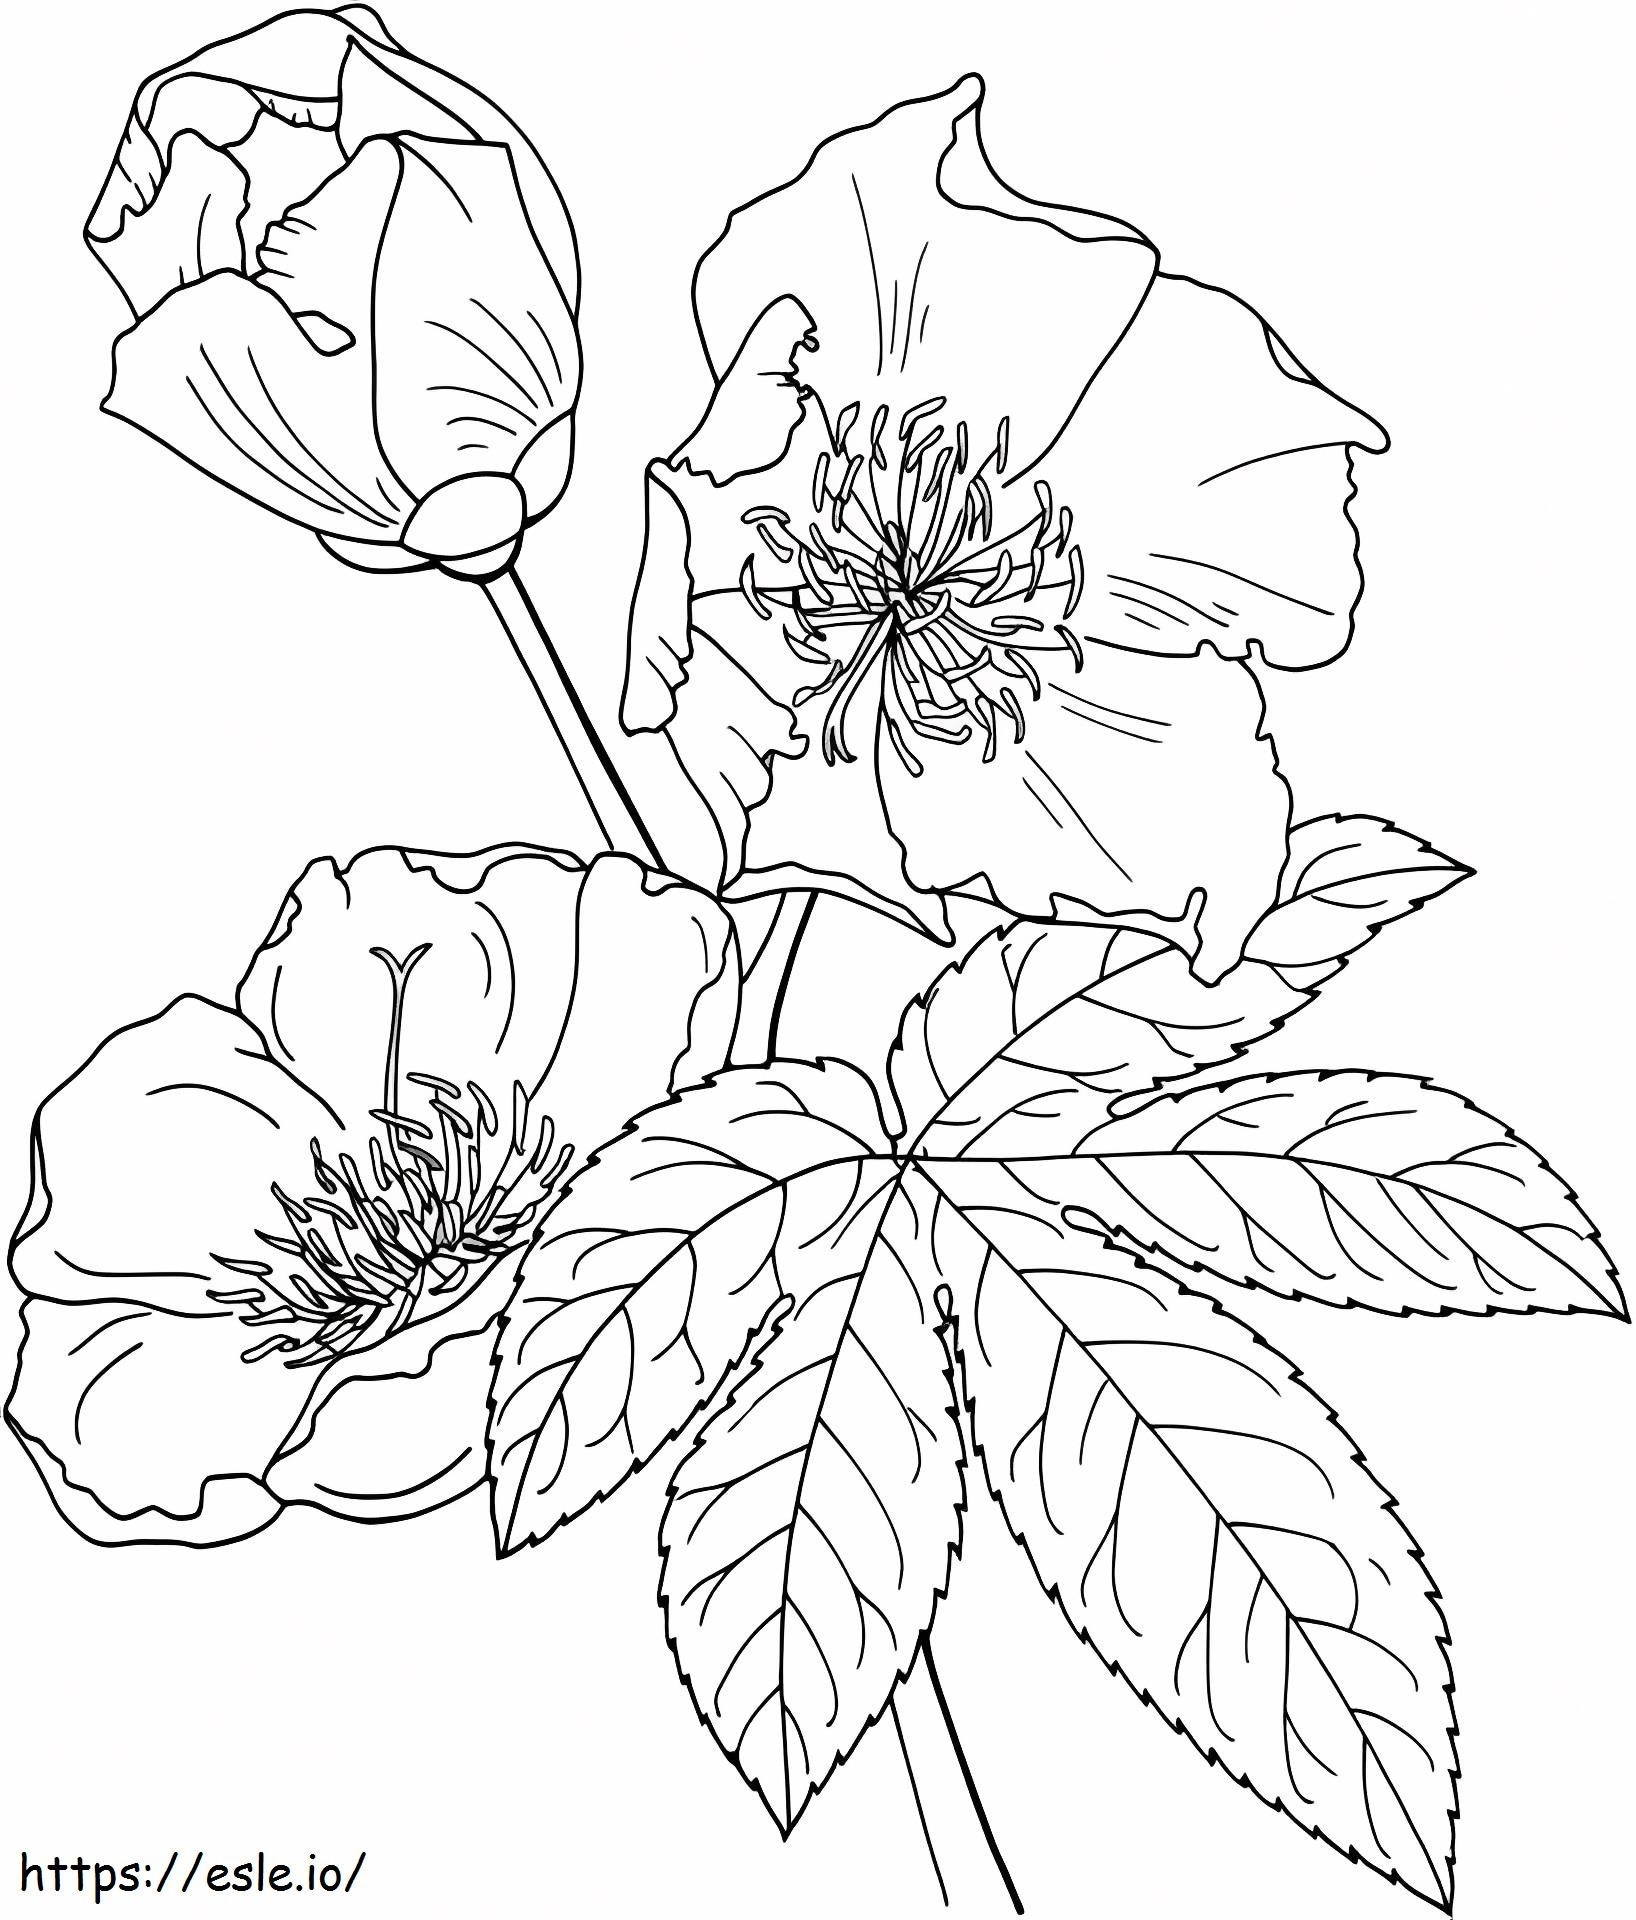 1527065135_Cochlospermum Vitifolium of boterbloemboom kleurplaat kleurplaat